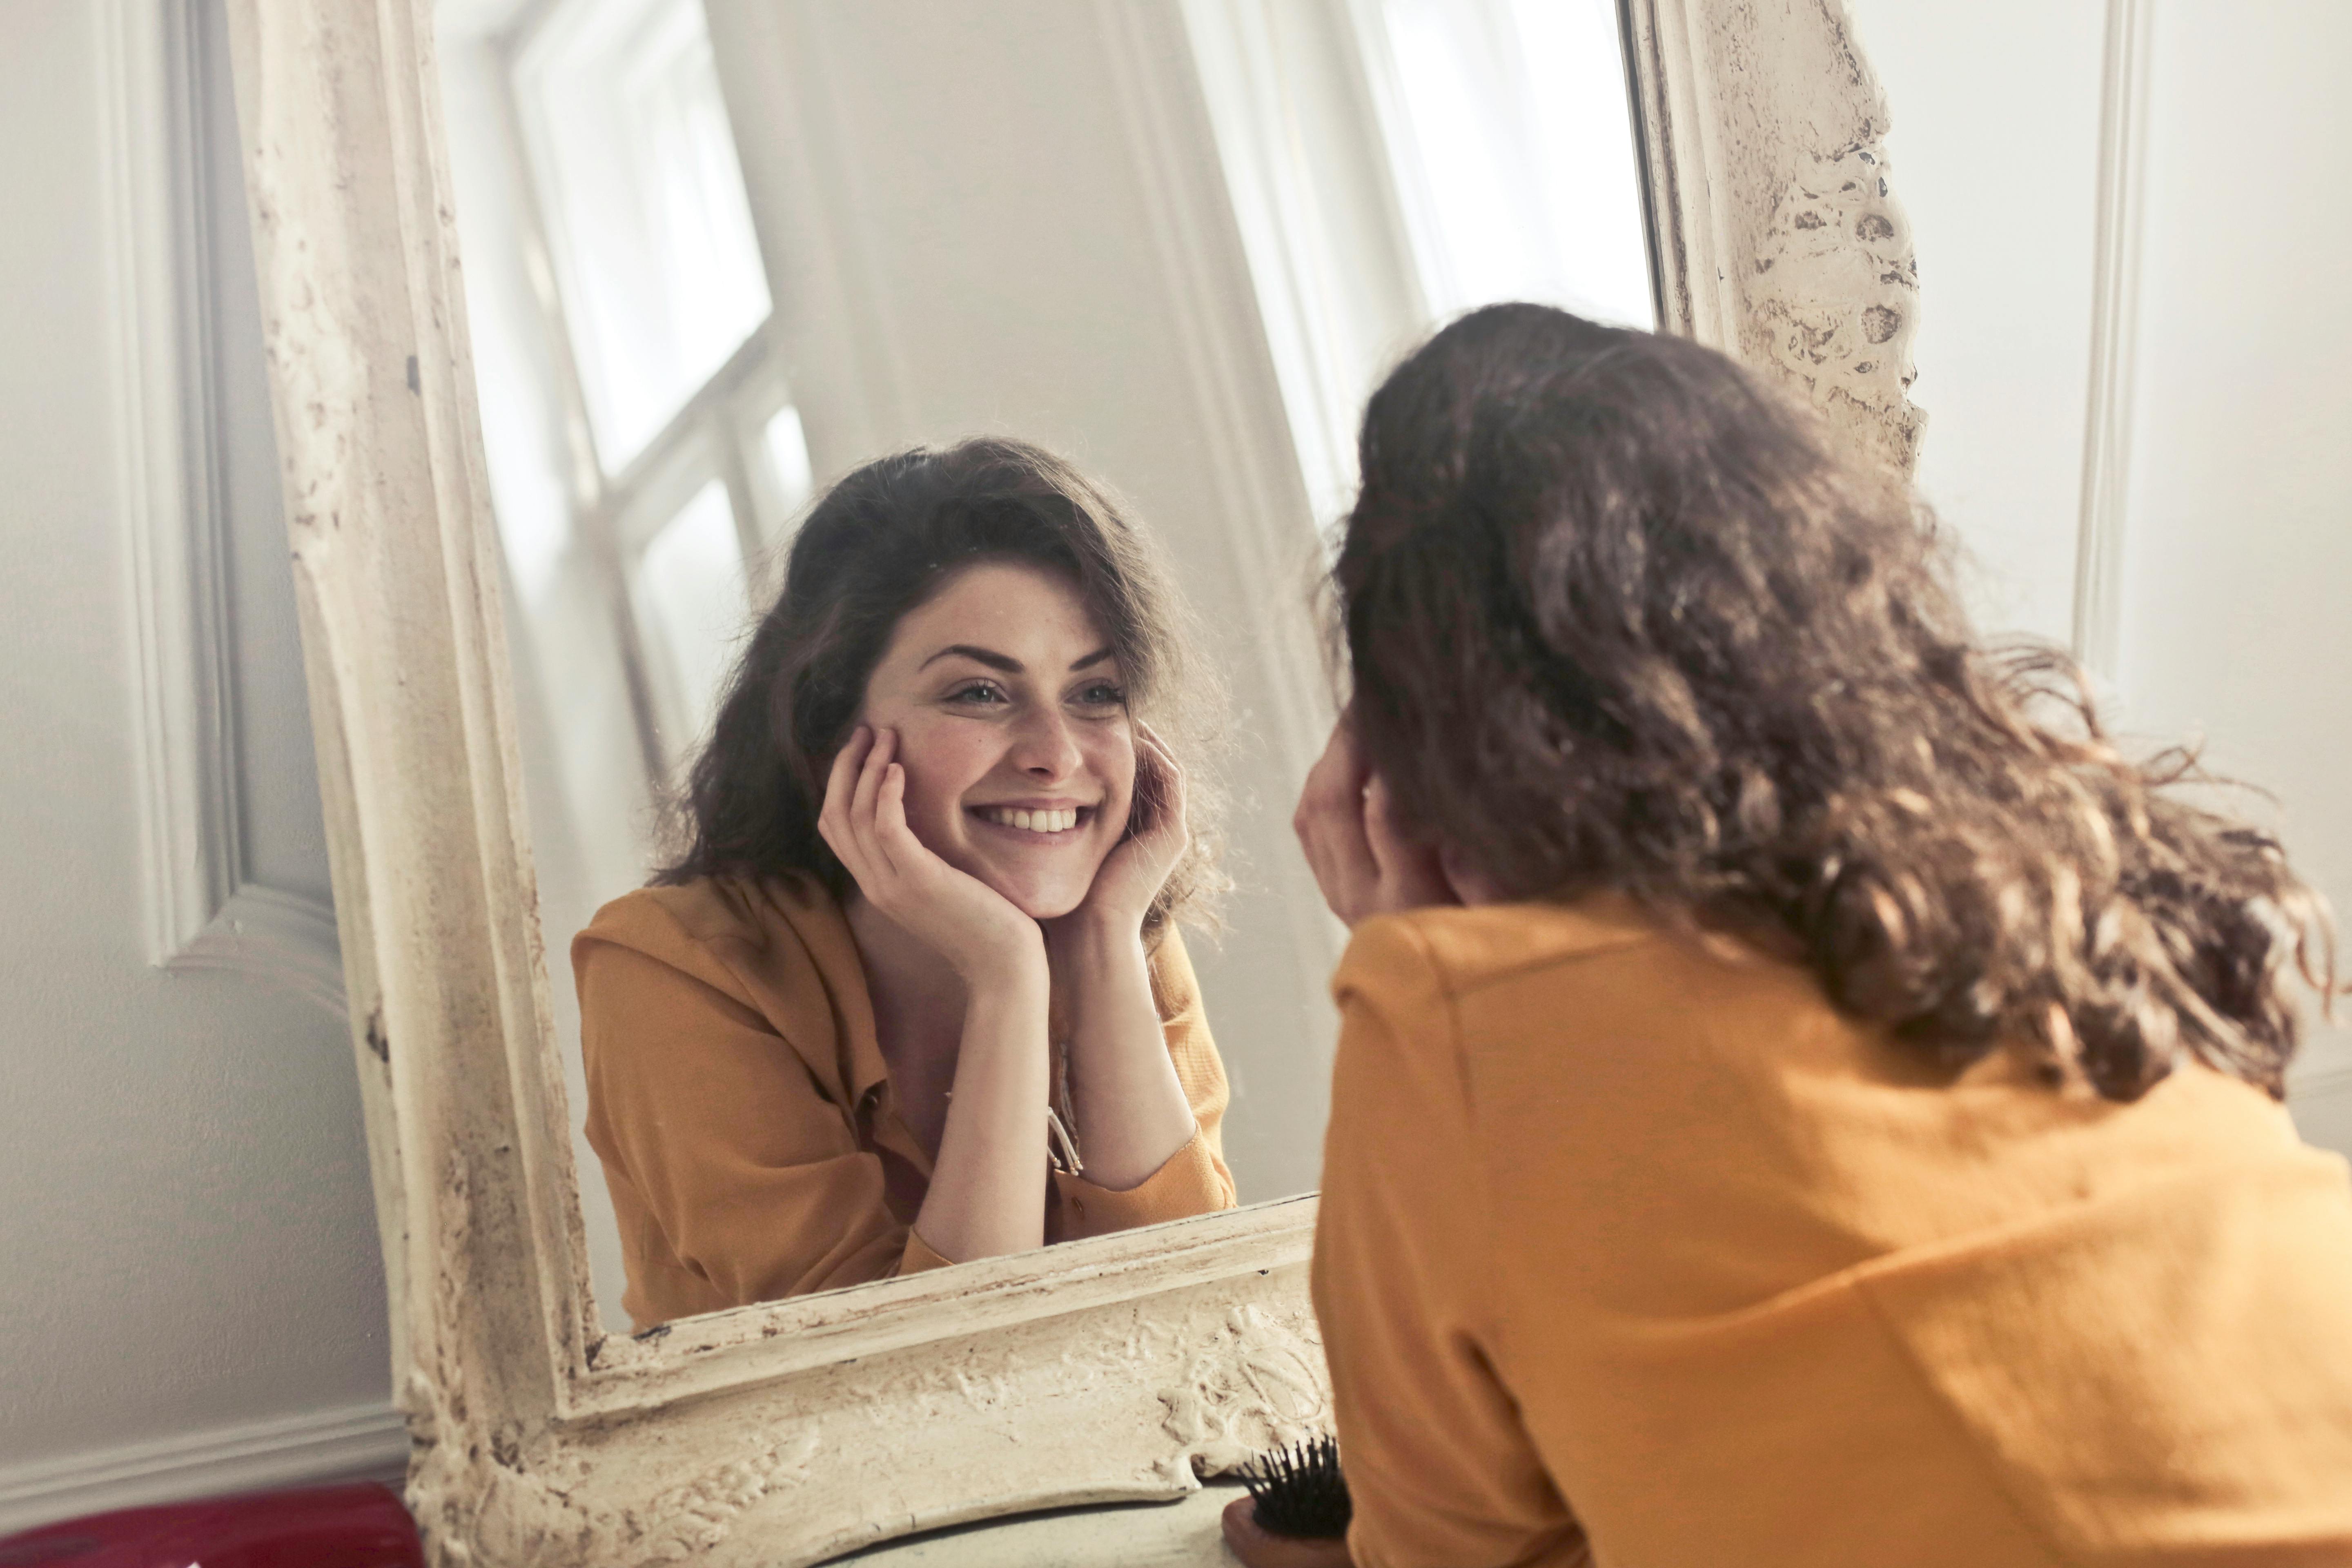 Eine Frau lächelt, während sie ihr Spiegelbild betrachtet | Quelle: Pexels